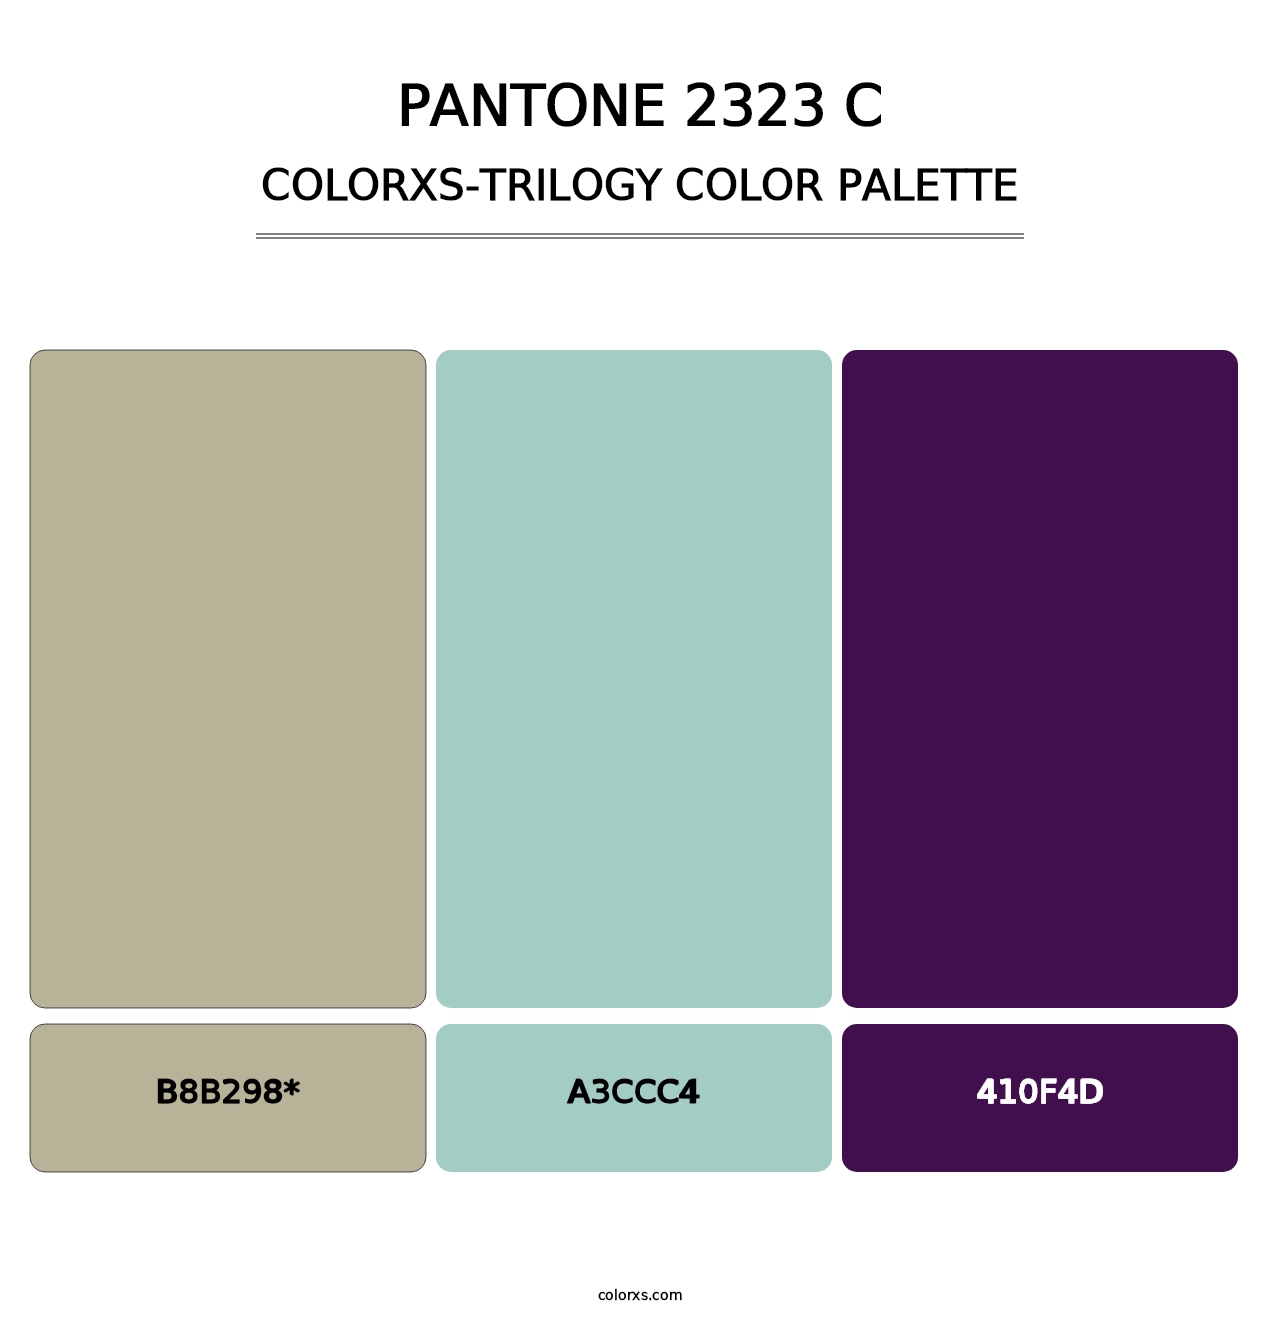 PANTONE 2323 C - Colorxs Trilogy Palette